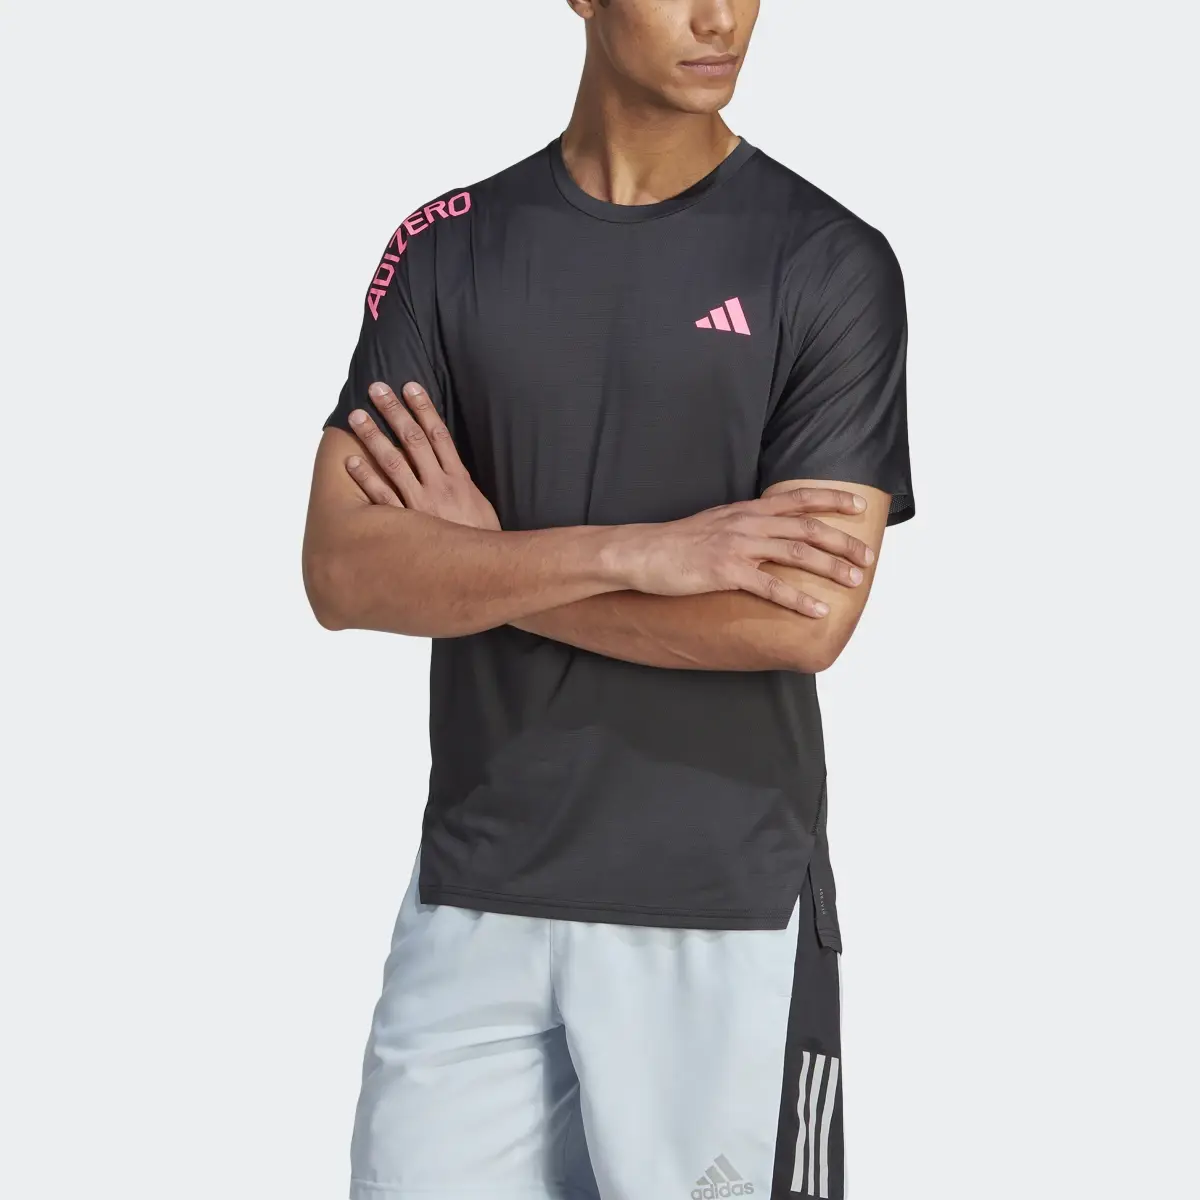 Adidas Adizero Running T-Shirt. 1